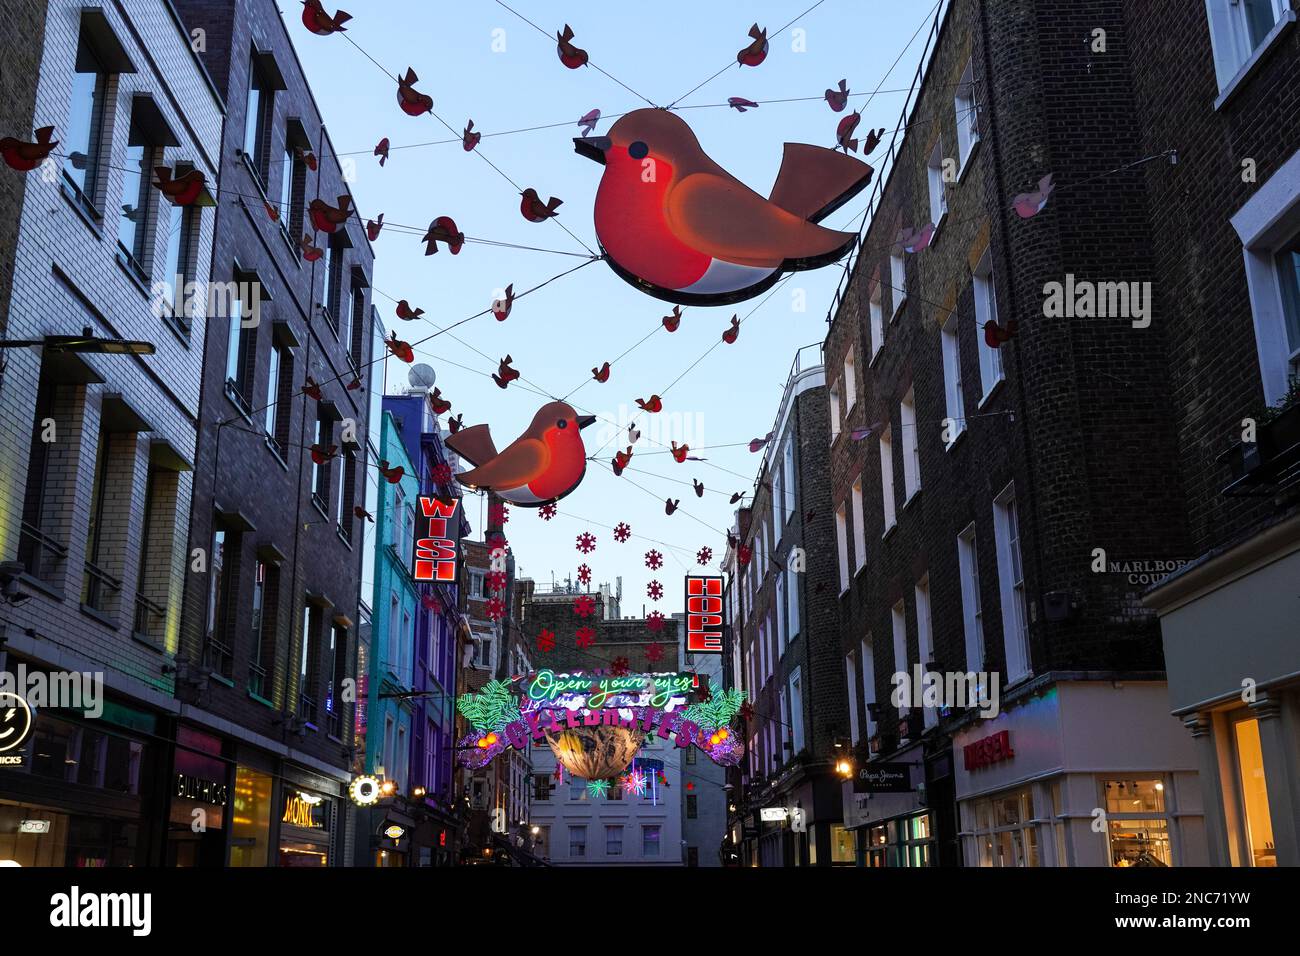 Lumières et décorations de Noël sur Carnaby Street, Londres Angleterre Royaume-Uni Banque D'Images